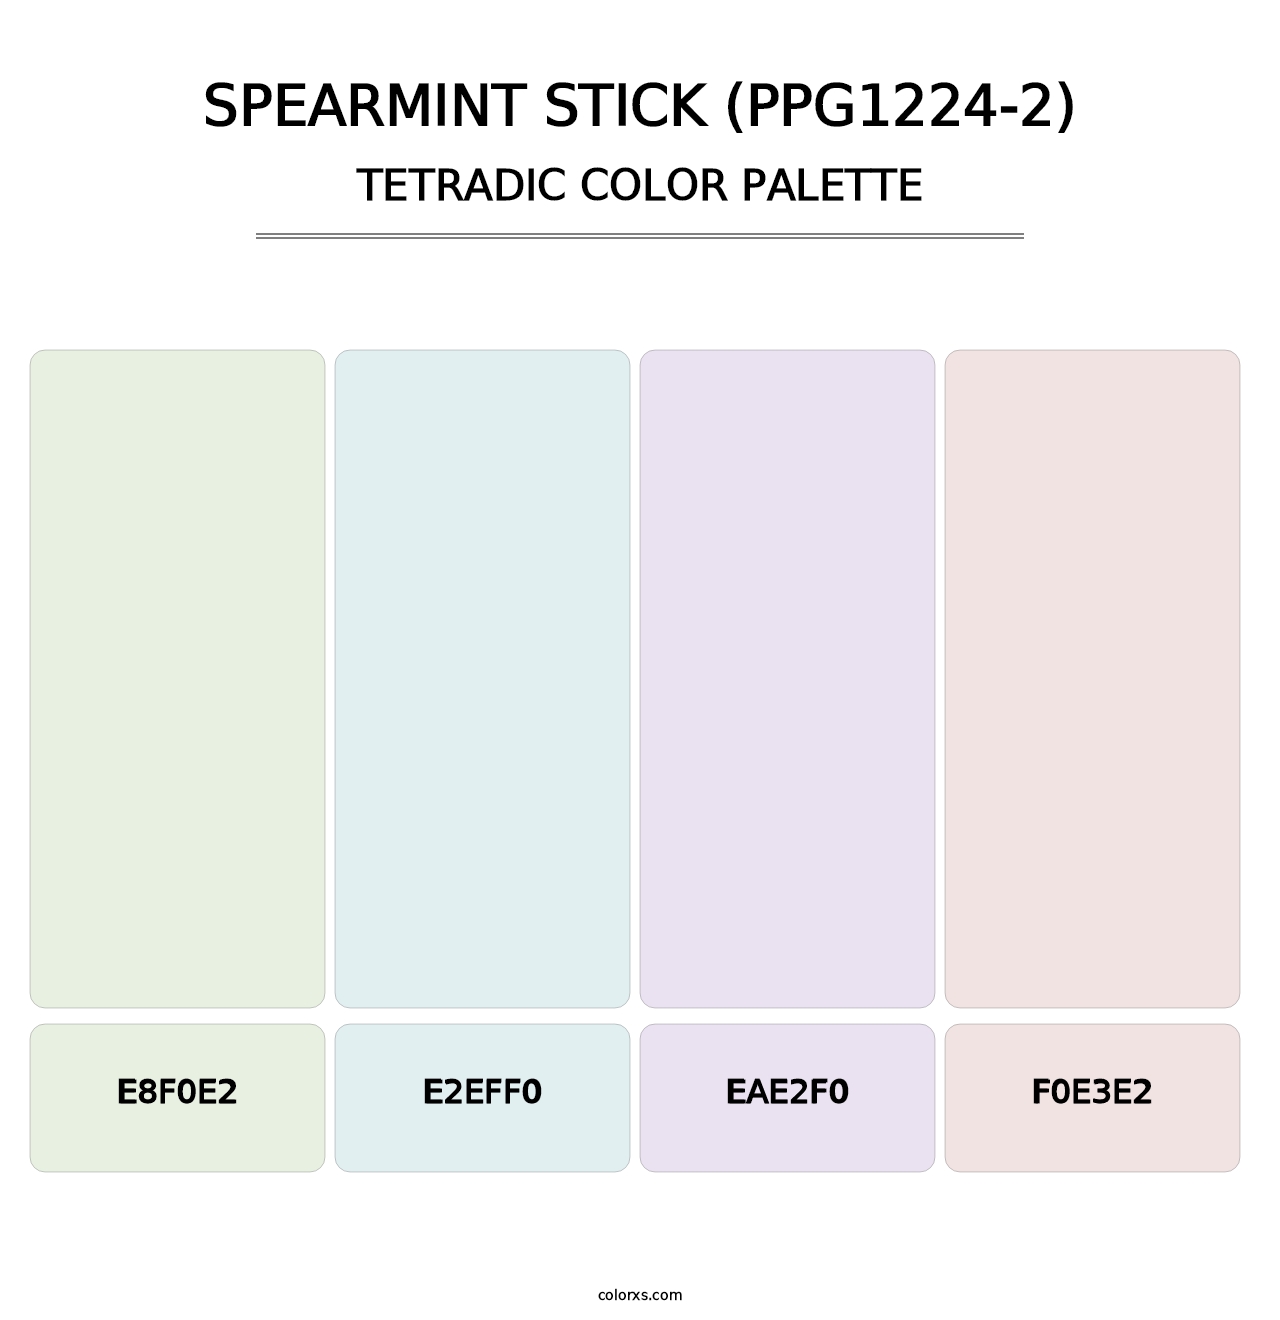 Spearmint Stick (PPG1224-2) - Tetradic Color Palette